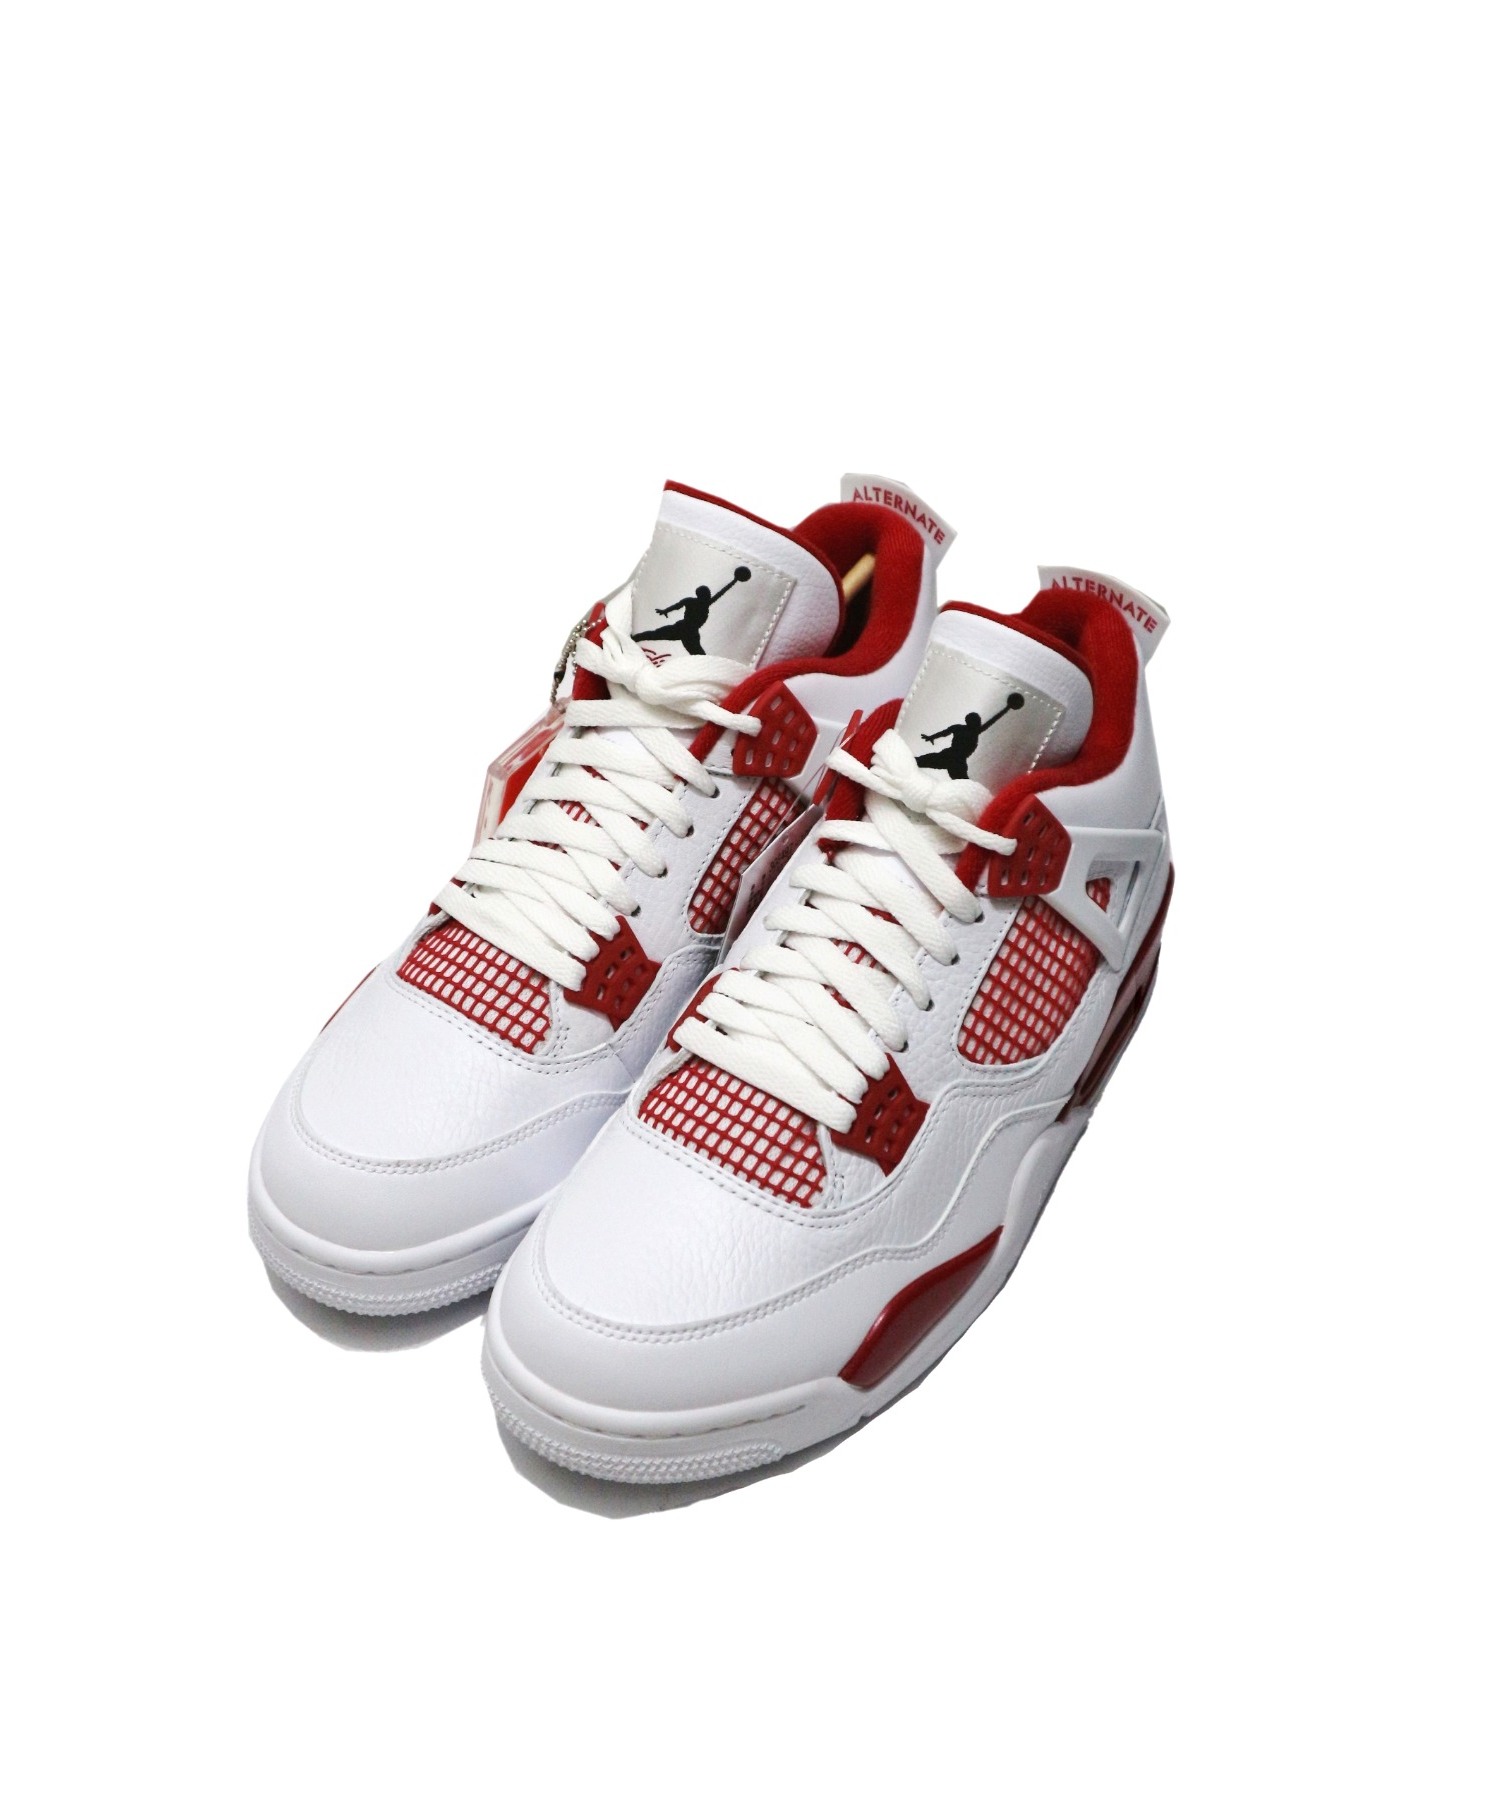 中古 古着通販 Nike ナイキ Air Jordan 4 Retro エアジョーダン4レトロ ホワイト レッド サイズ 28 未使用品 106 ブランド 古着通販 トレファク公式 Trefac Fashion